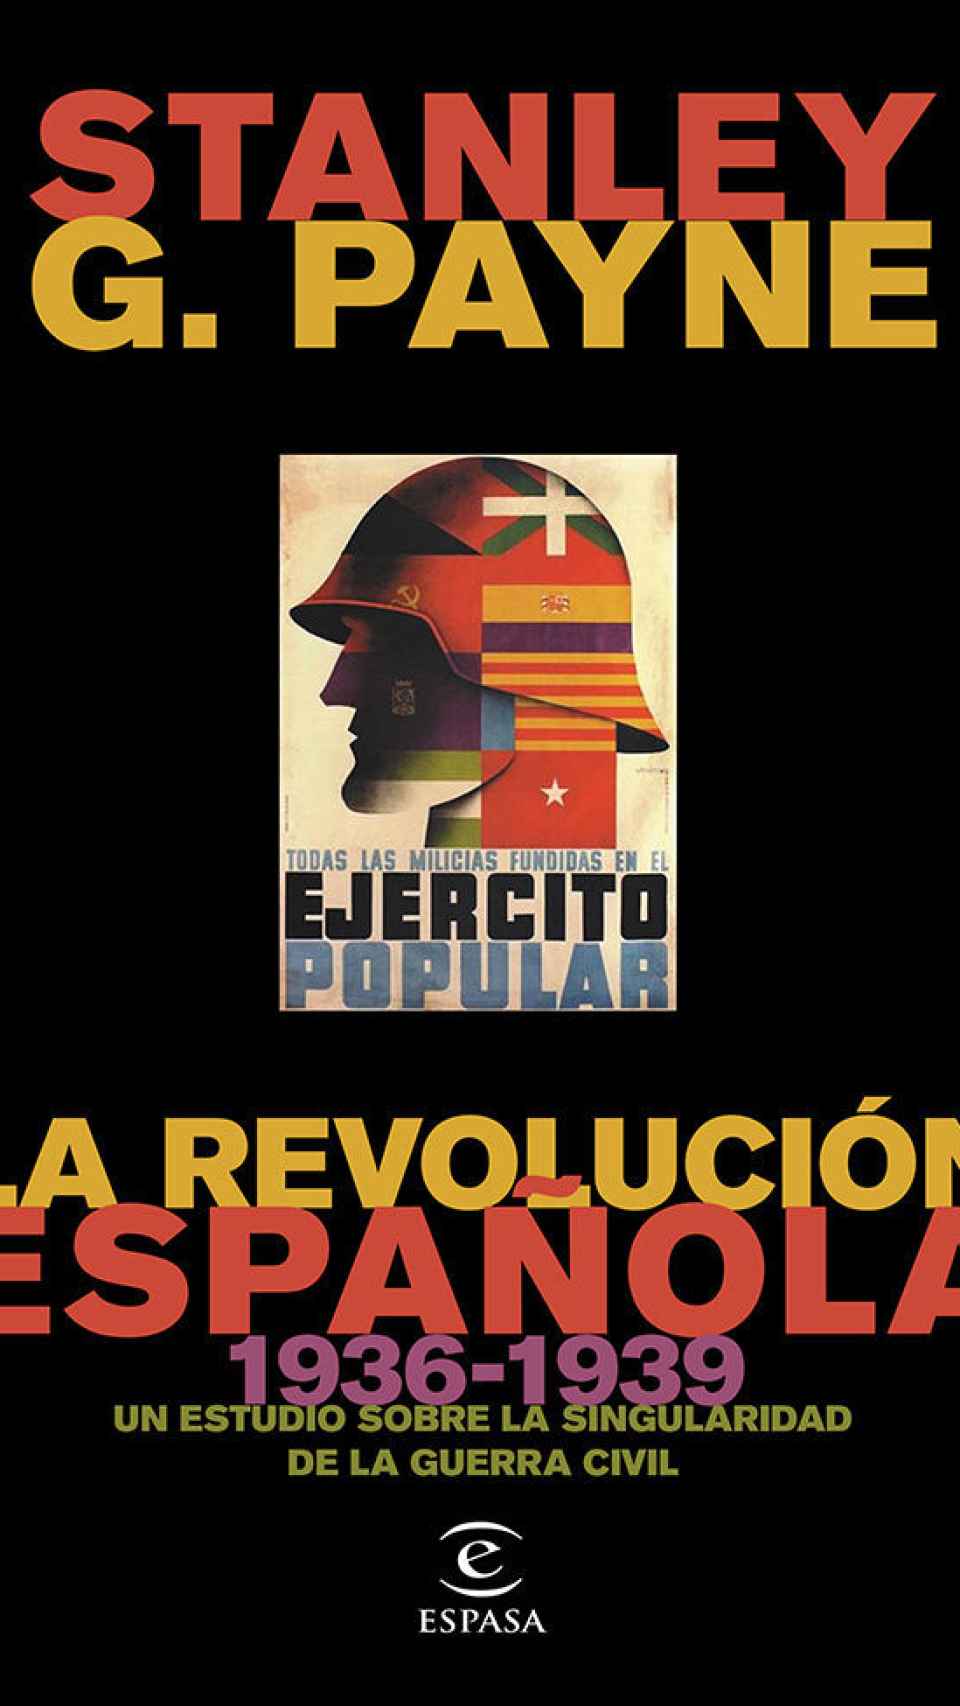 La revolución española (1936-1939). Un estudio sobre la singularidad de la Guerra Civil